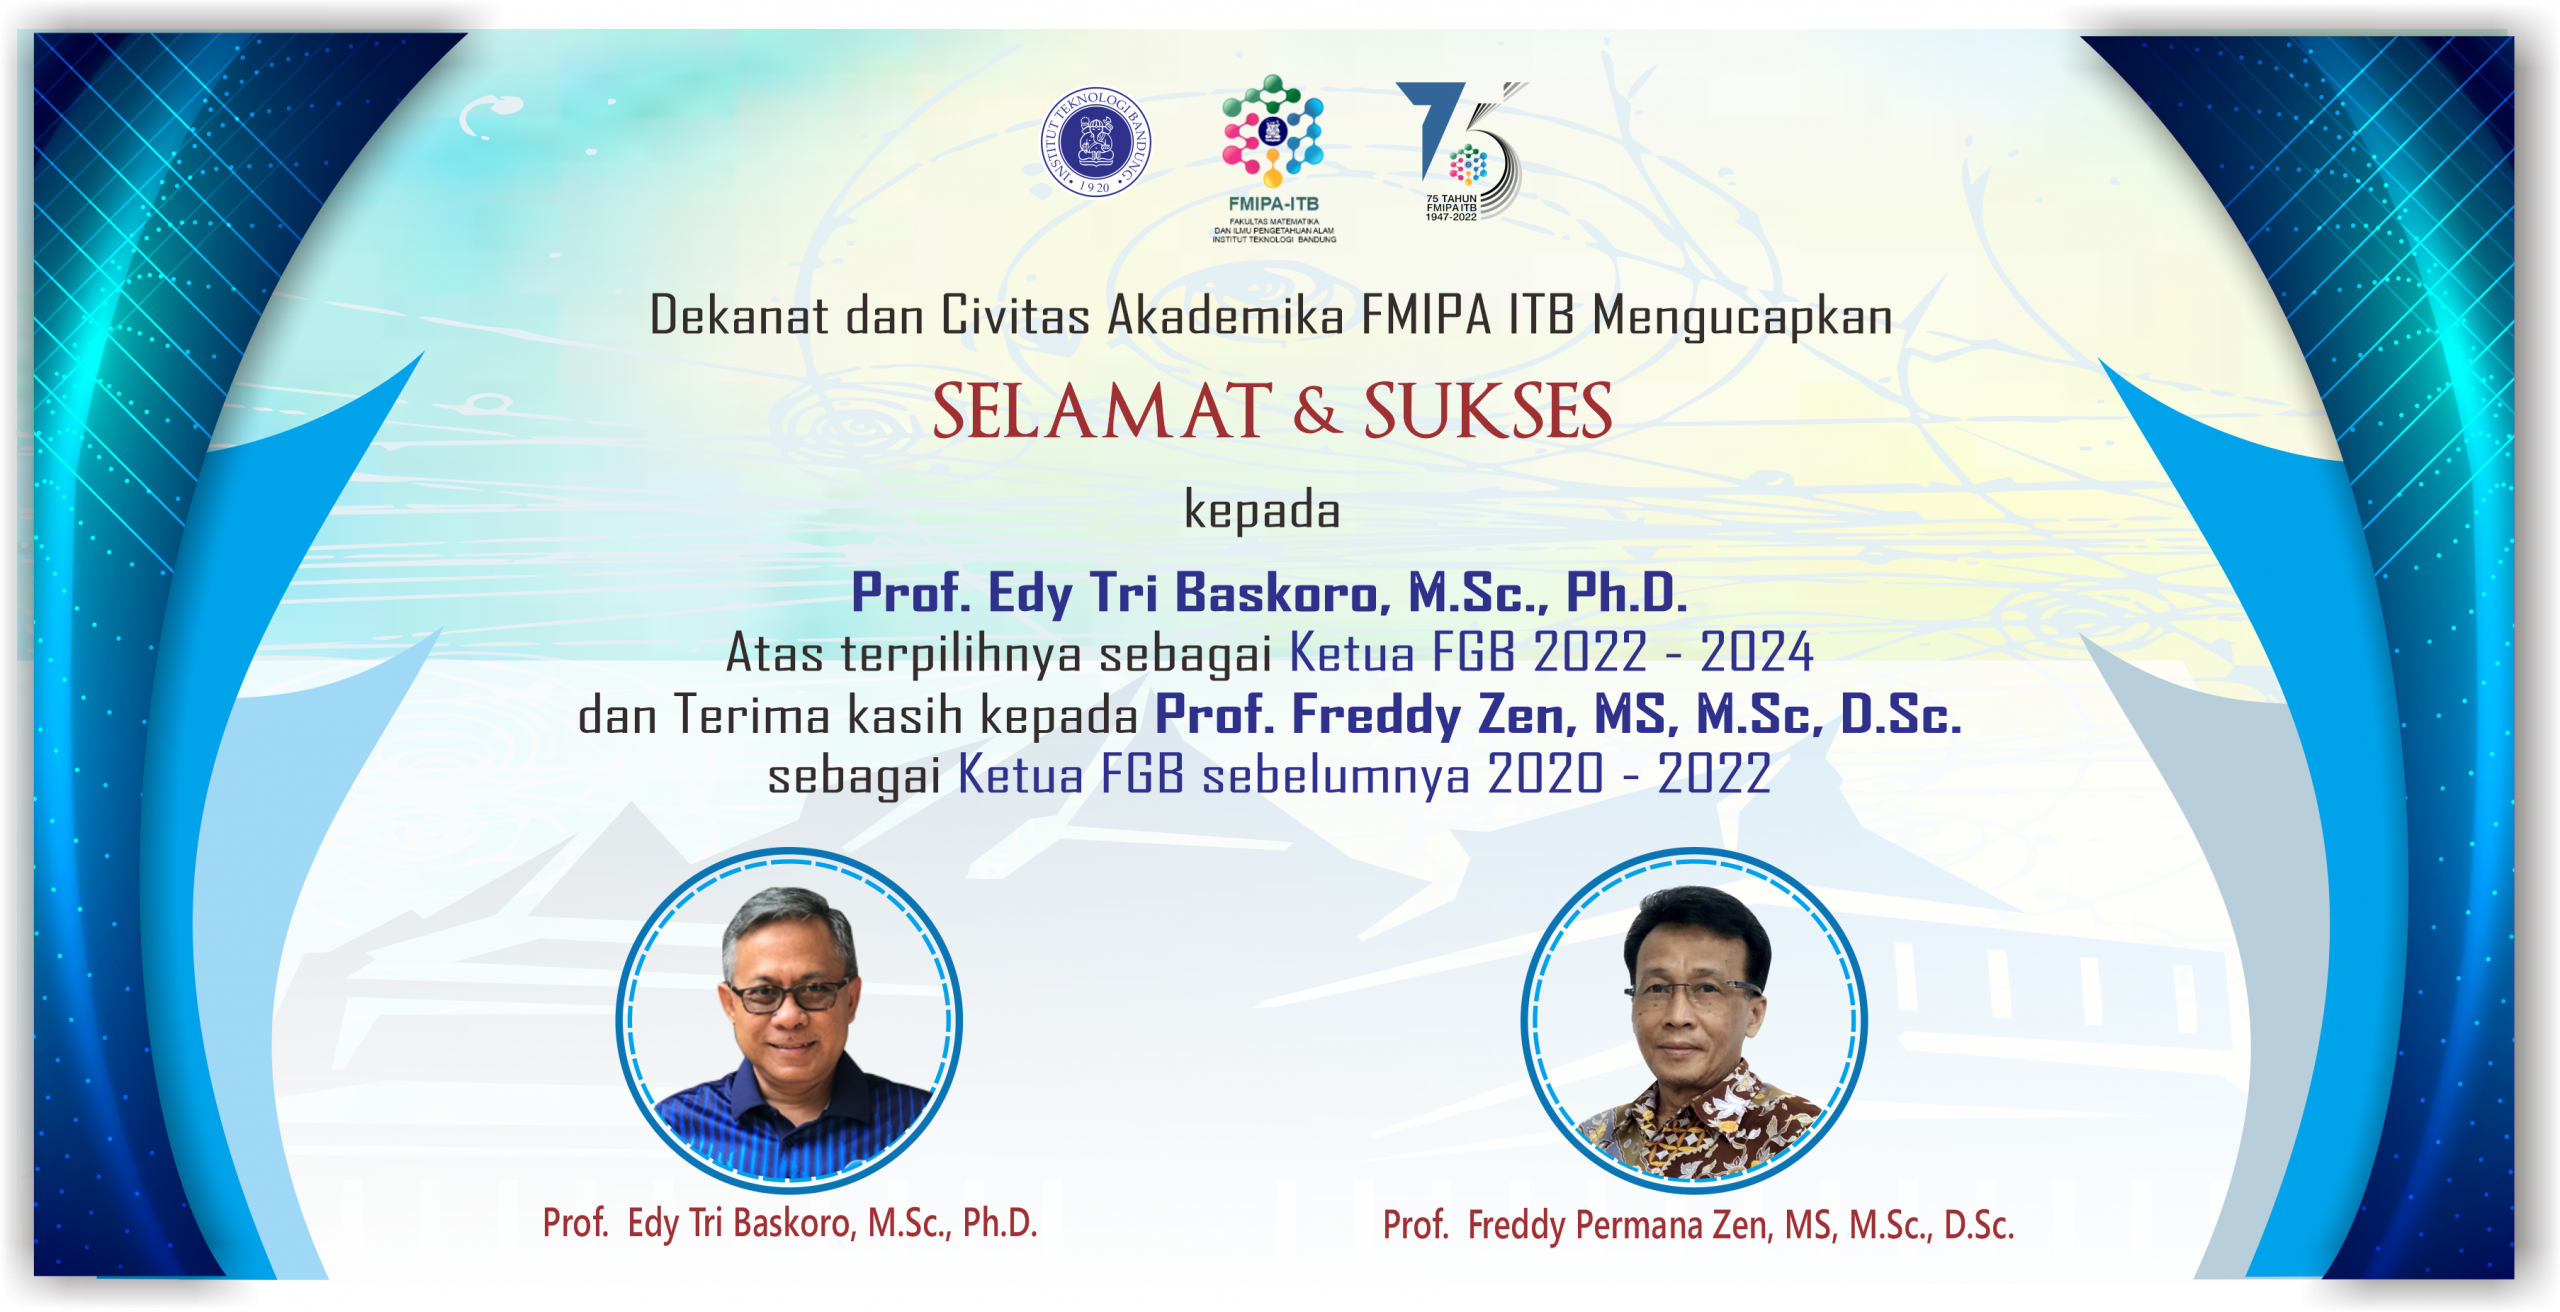 Selamat dan Sukses Kepada Prof. Edy Tri Baskoro, M.Sc., Ph.D atas terpilihnya sebagai Ketua Forum Guru Besar (FGB) Periode 2022-2024